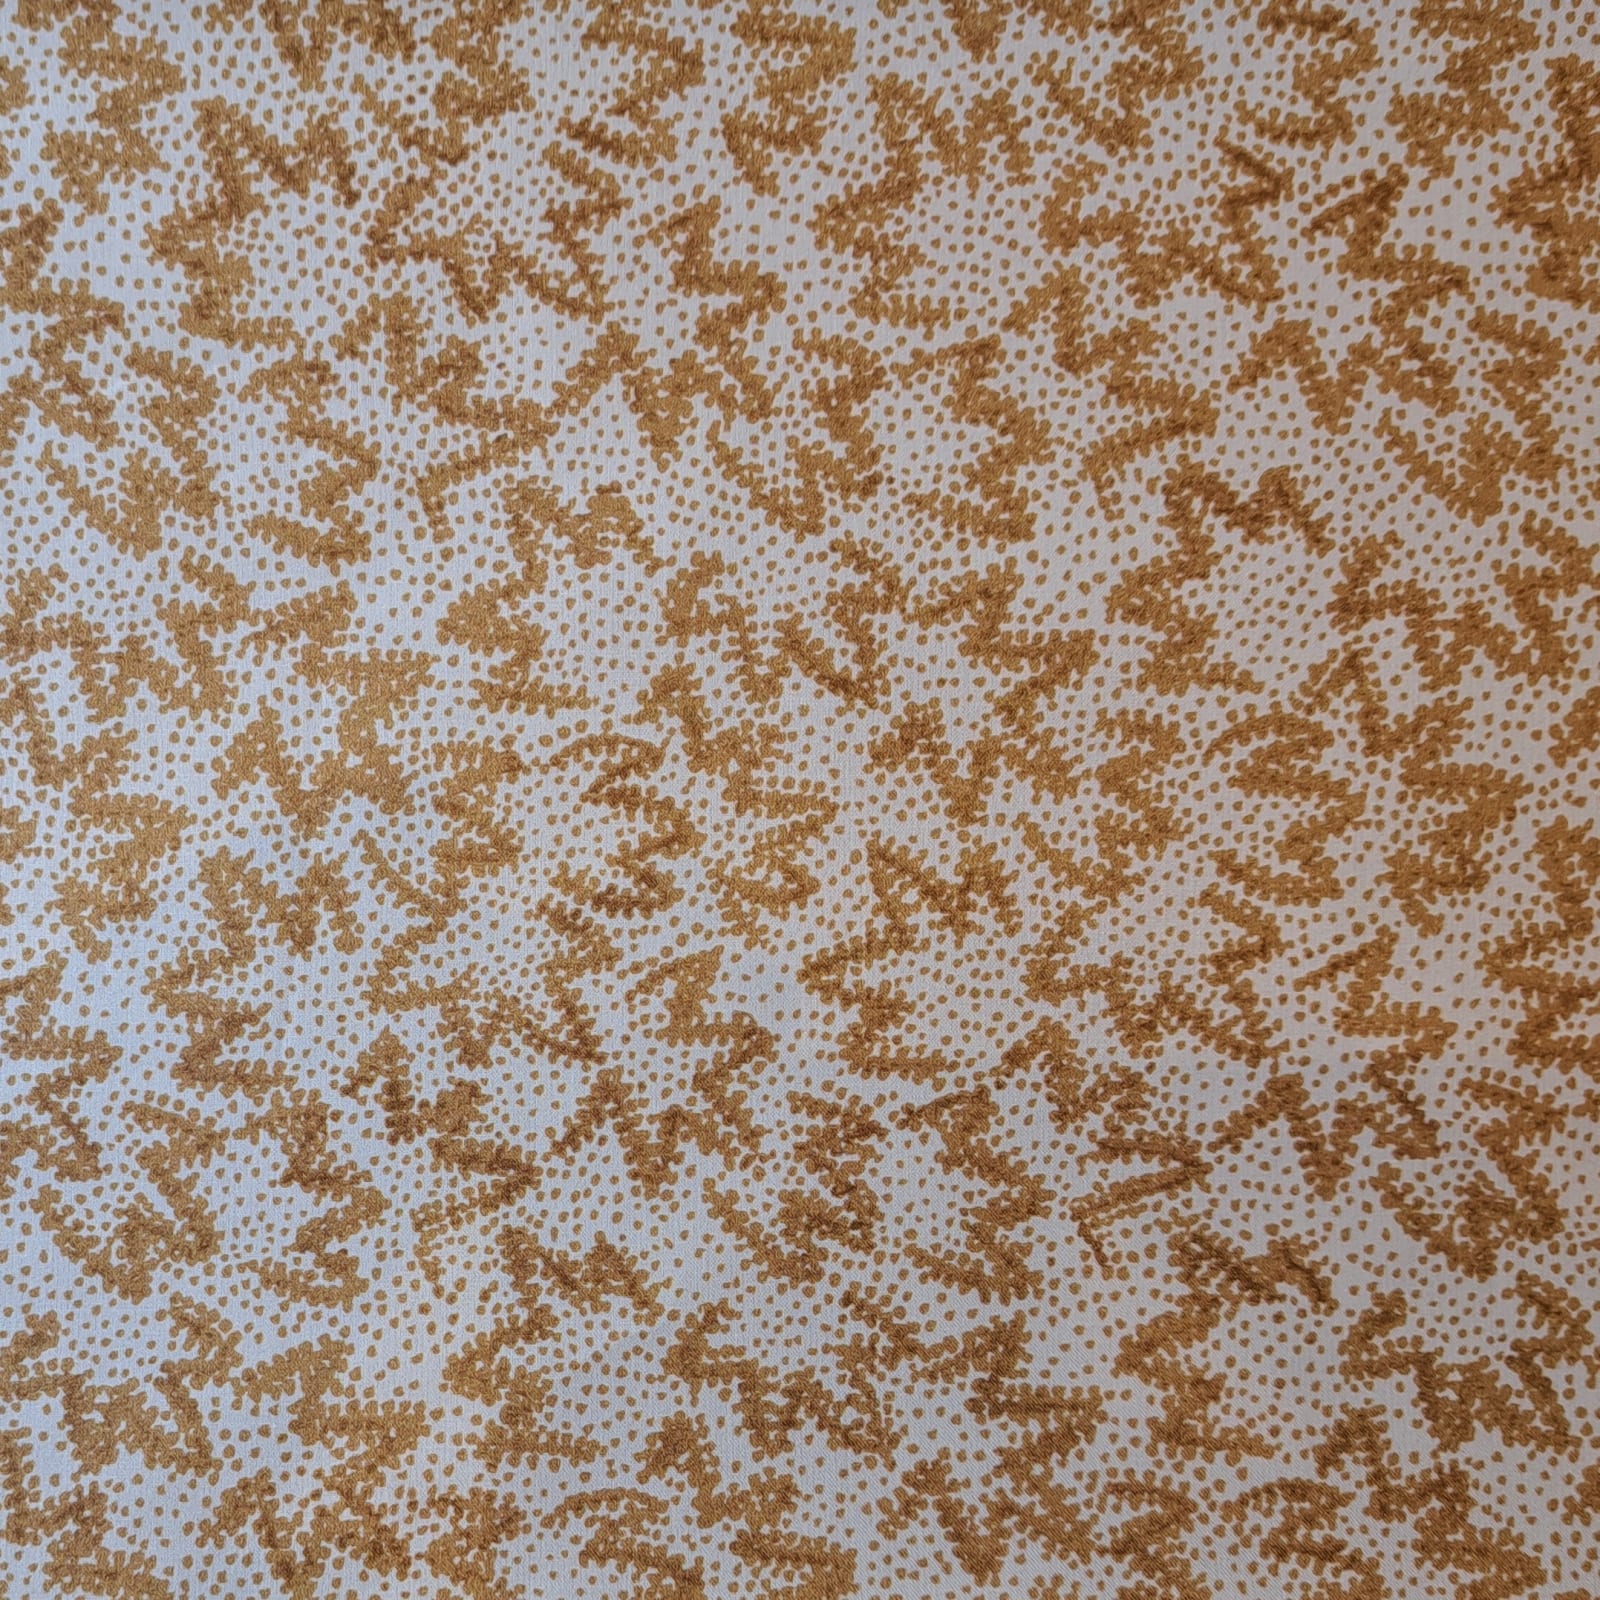 Beige Leopard Motif Wallpaper in Caramel